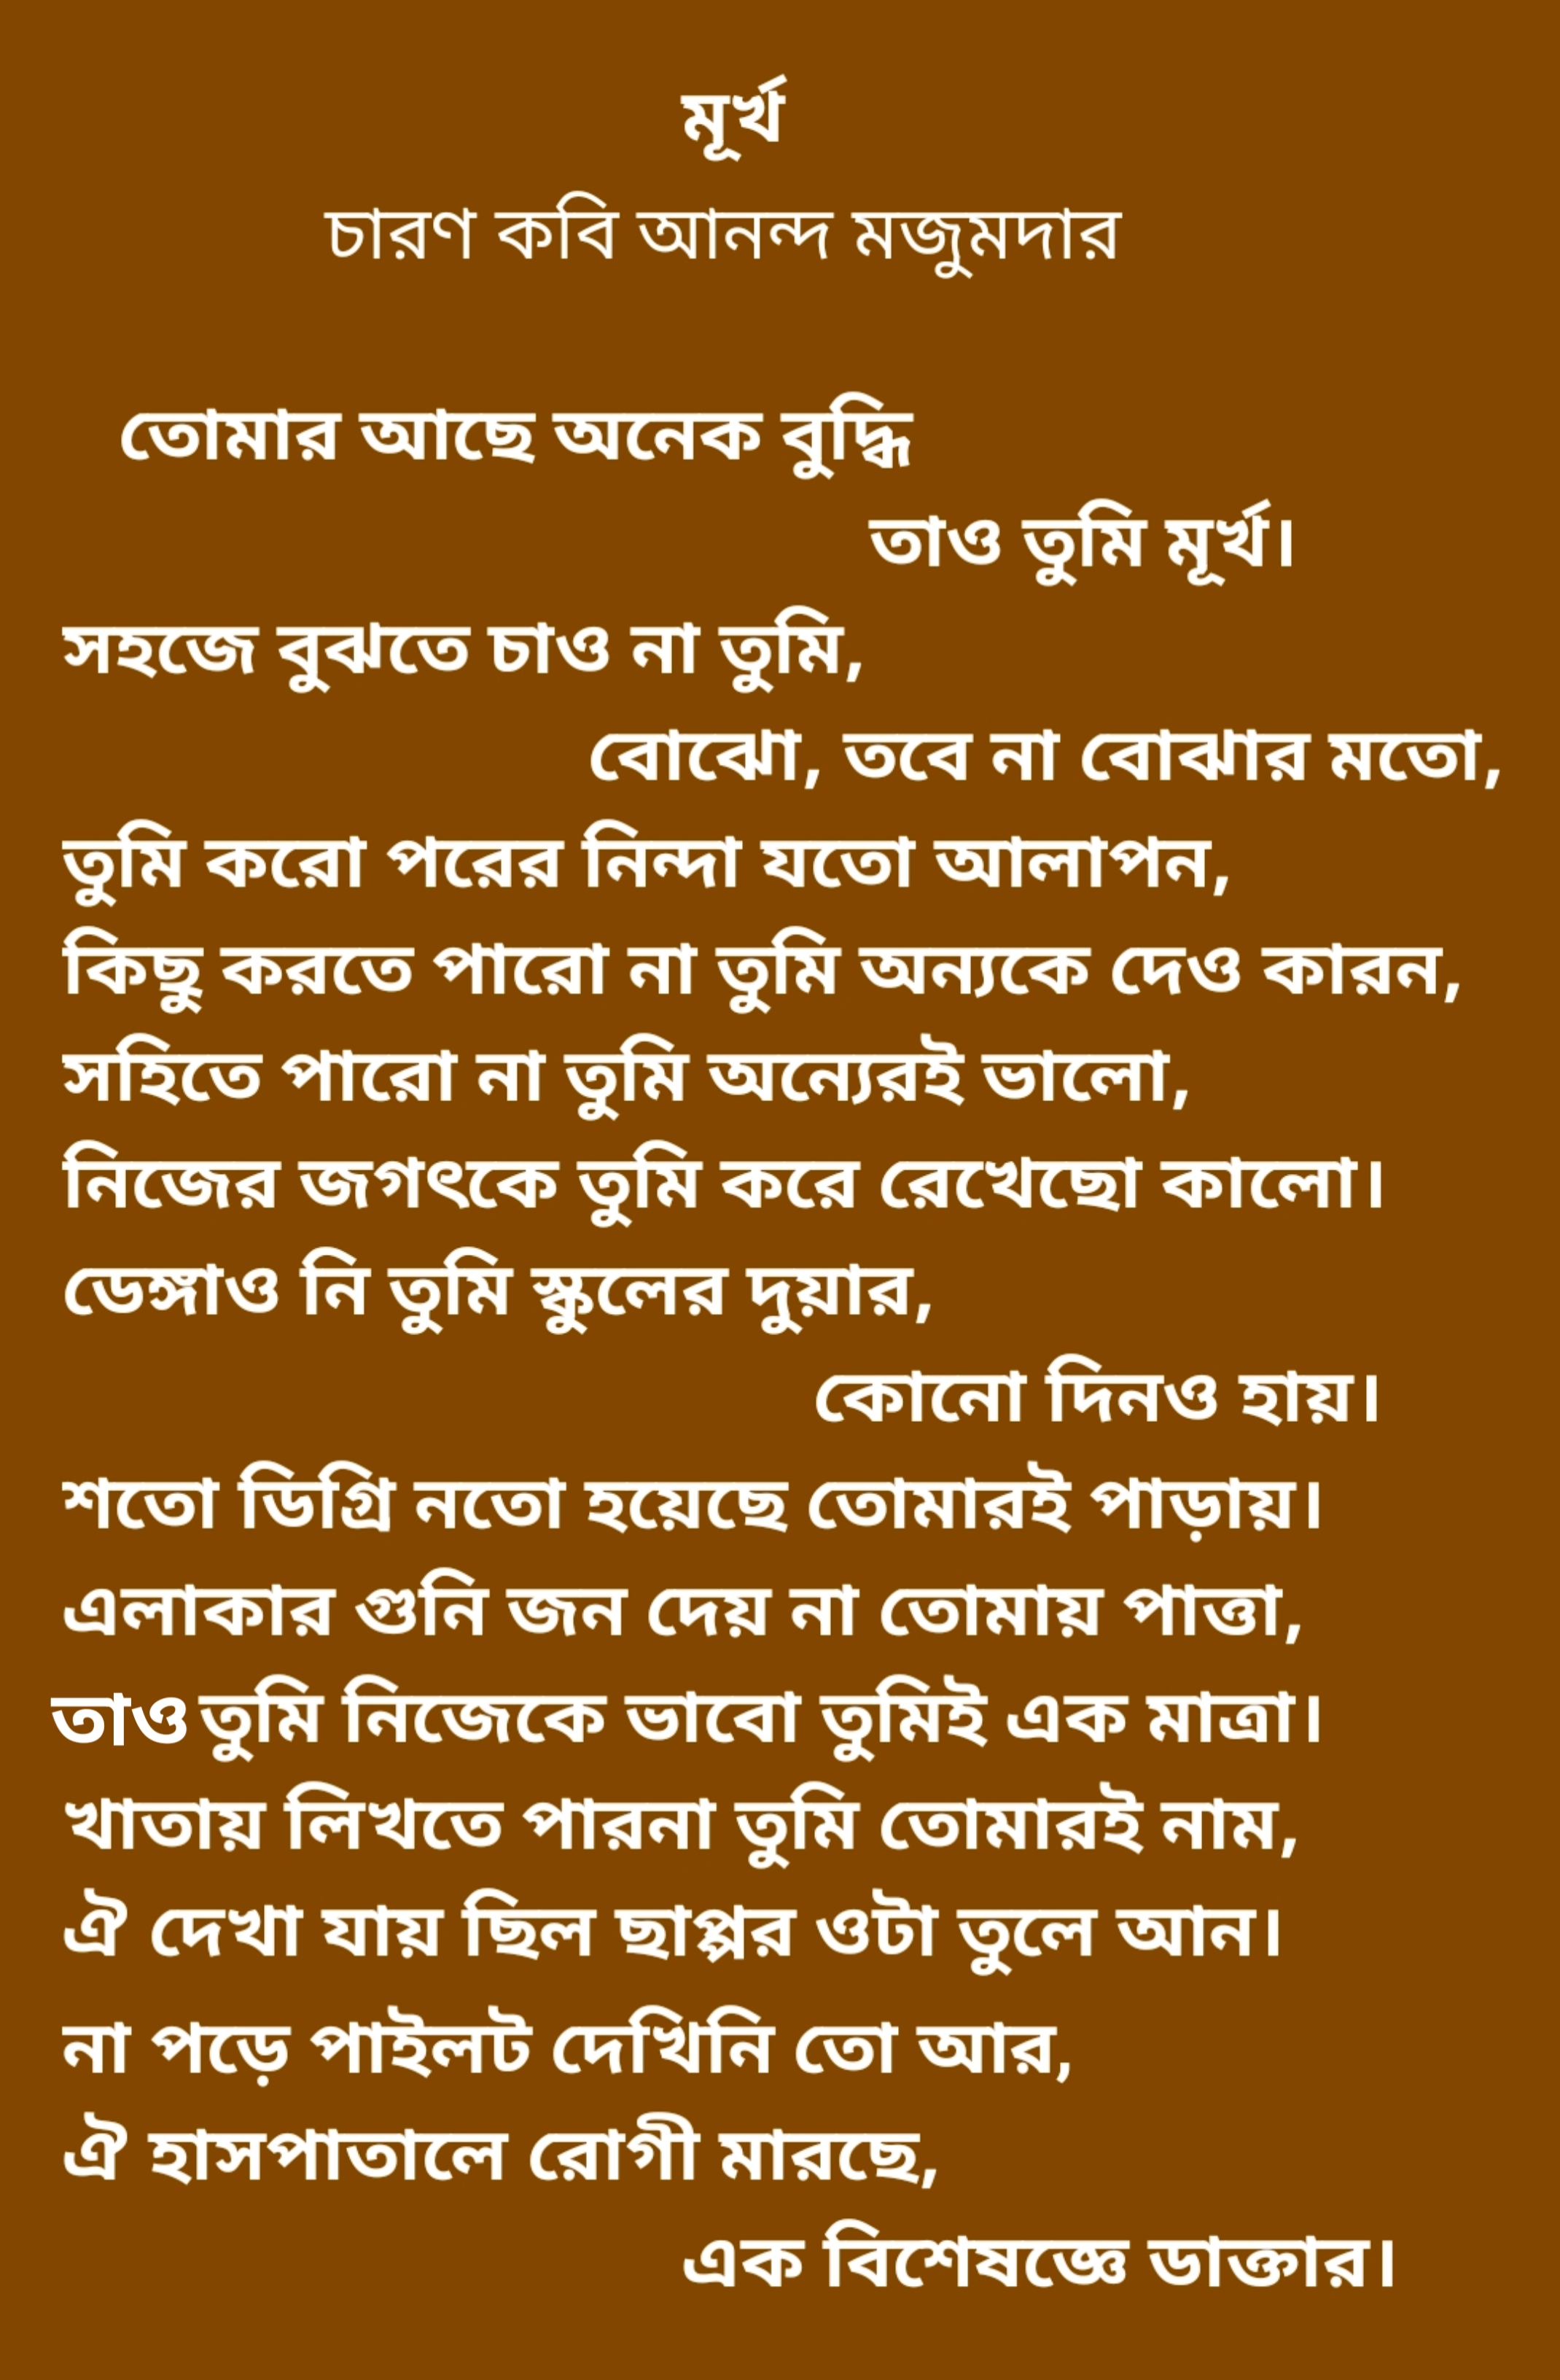 মূর্খ কবিতা, কবি আনন্দ মজুমদার।
ananda Majumder